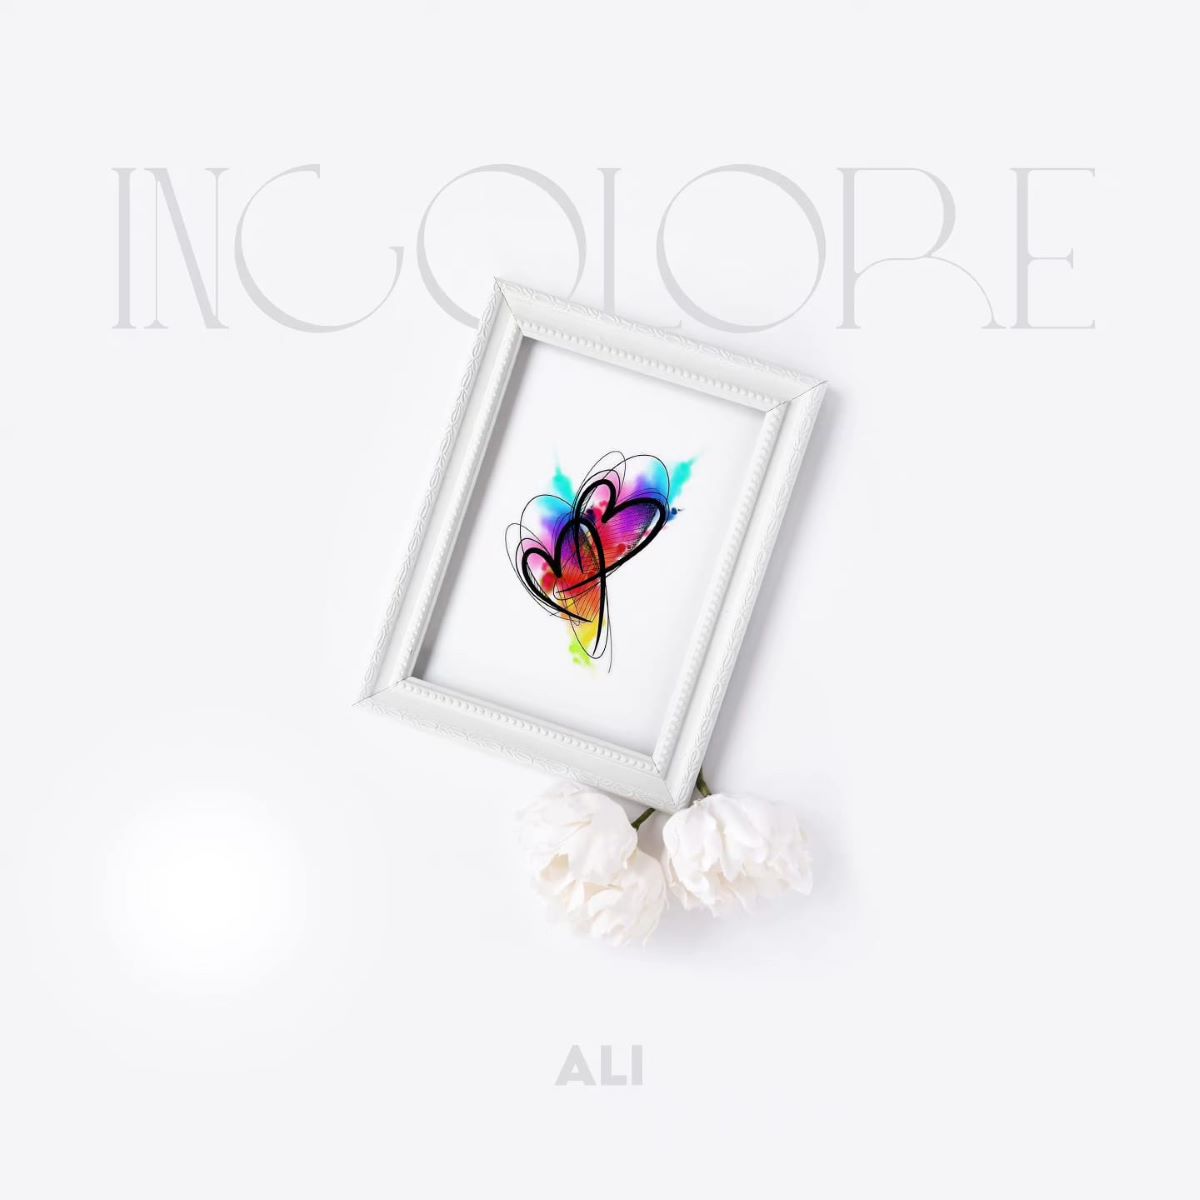 ALI - Il nuovo singolo “Incolore”